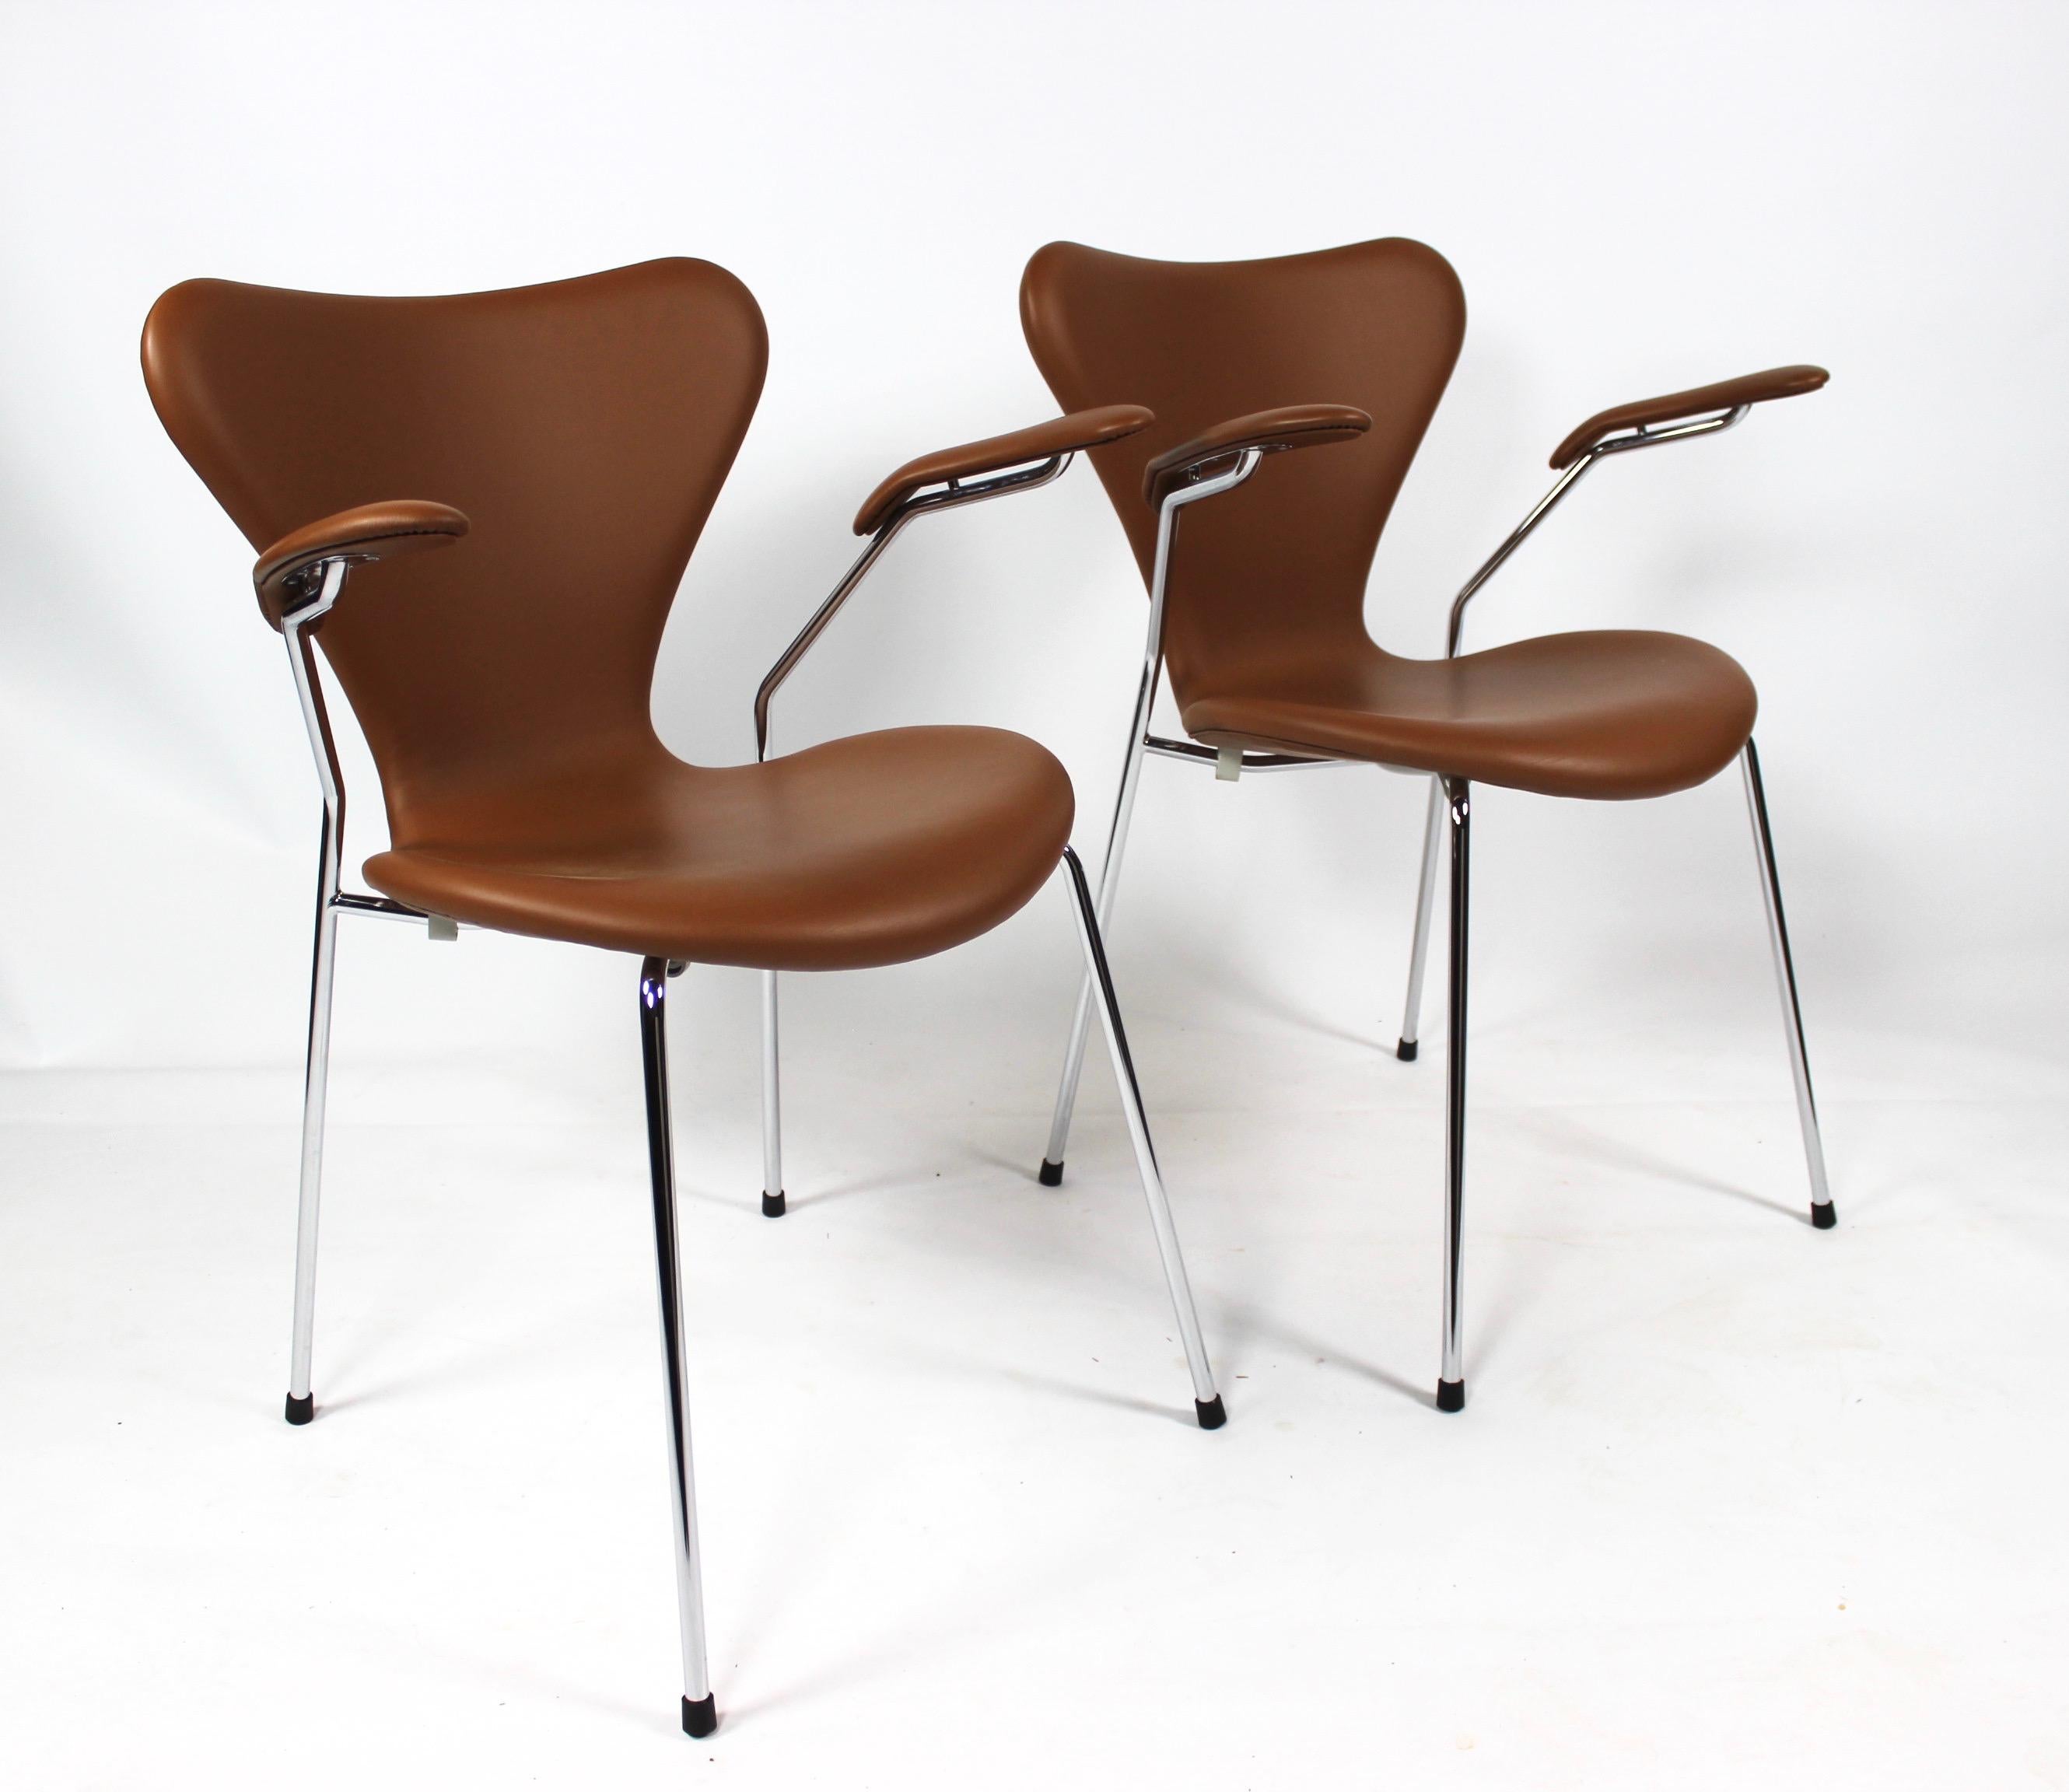 Dette sæt af Syver stole, model 3207, er et tidløst og ikonisk udtryk for dansk design, designet af den legendariske Arne Jacobsen i 1955 og fremstillet af Fritz Hansen i 2019. Stolene er udført i cognacfarvet læder og har elegante armlæn, der